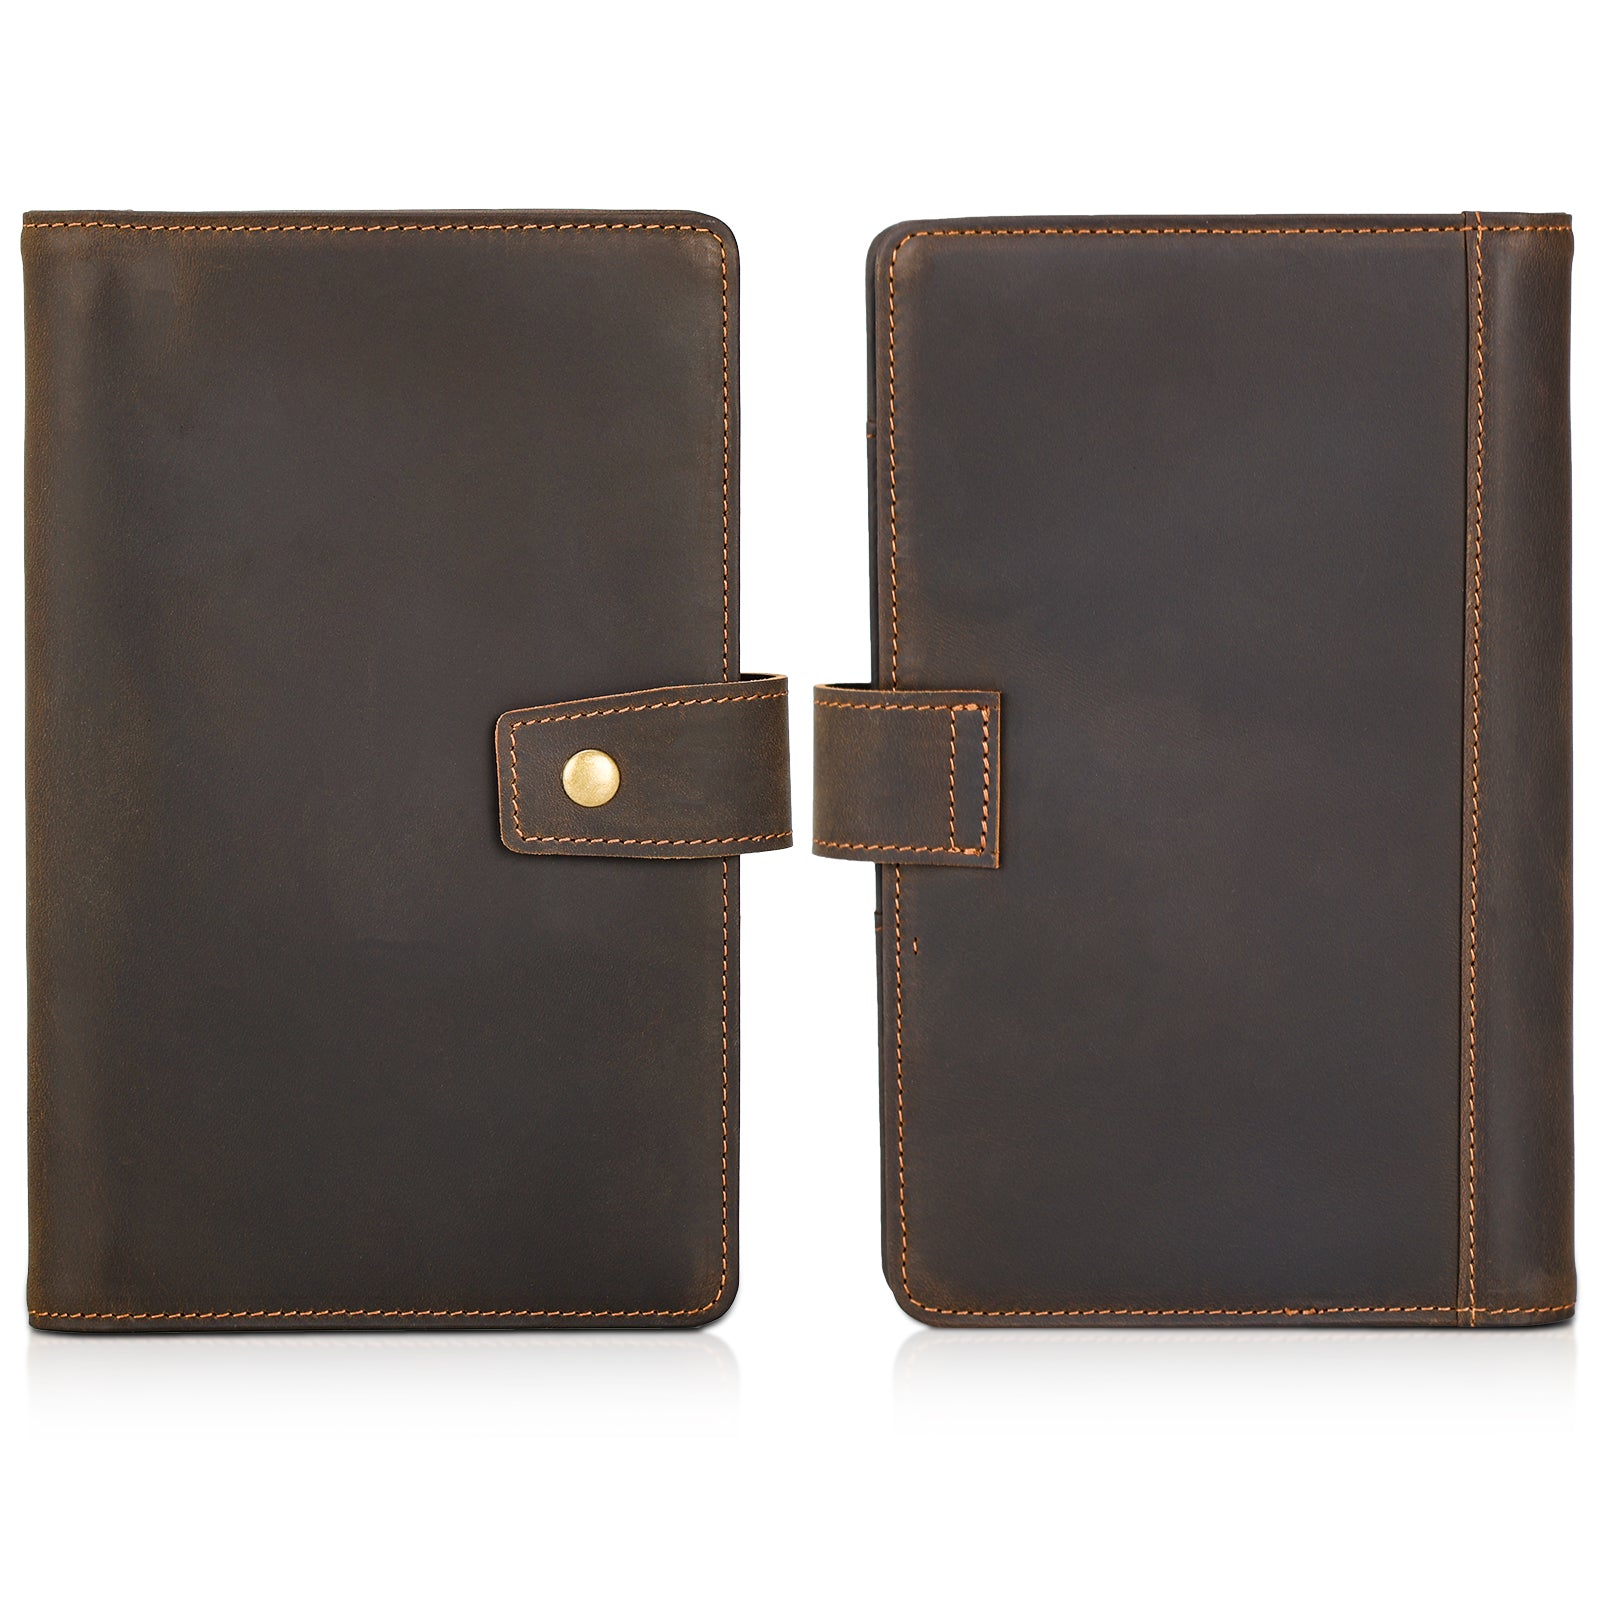 Full Grain Leather Passport Holder Family Travel Document Organizer (Front/Back)